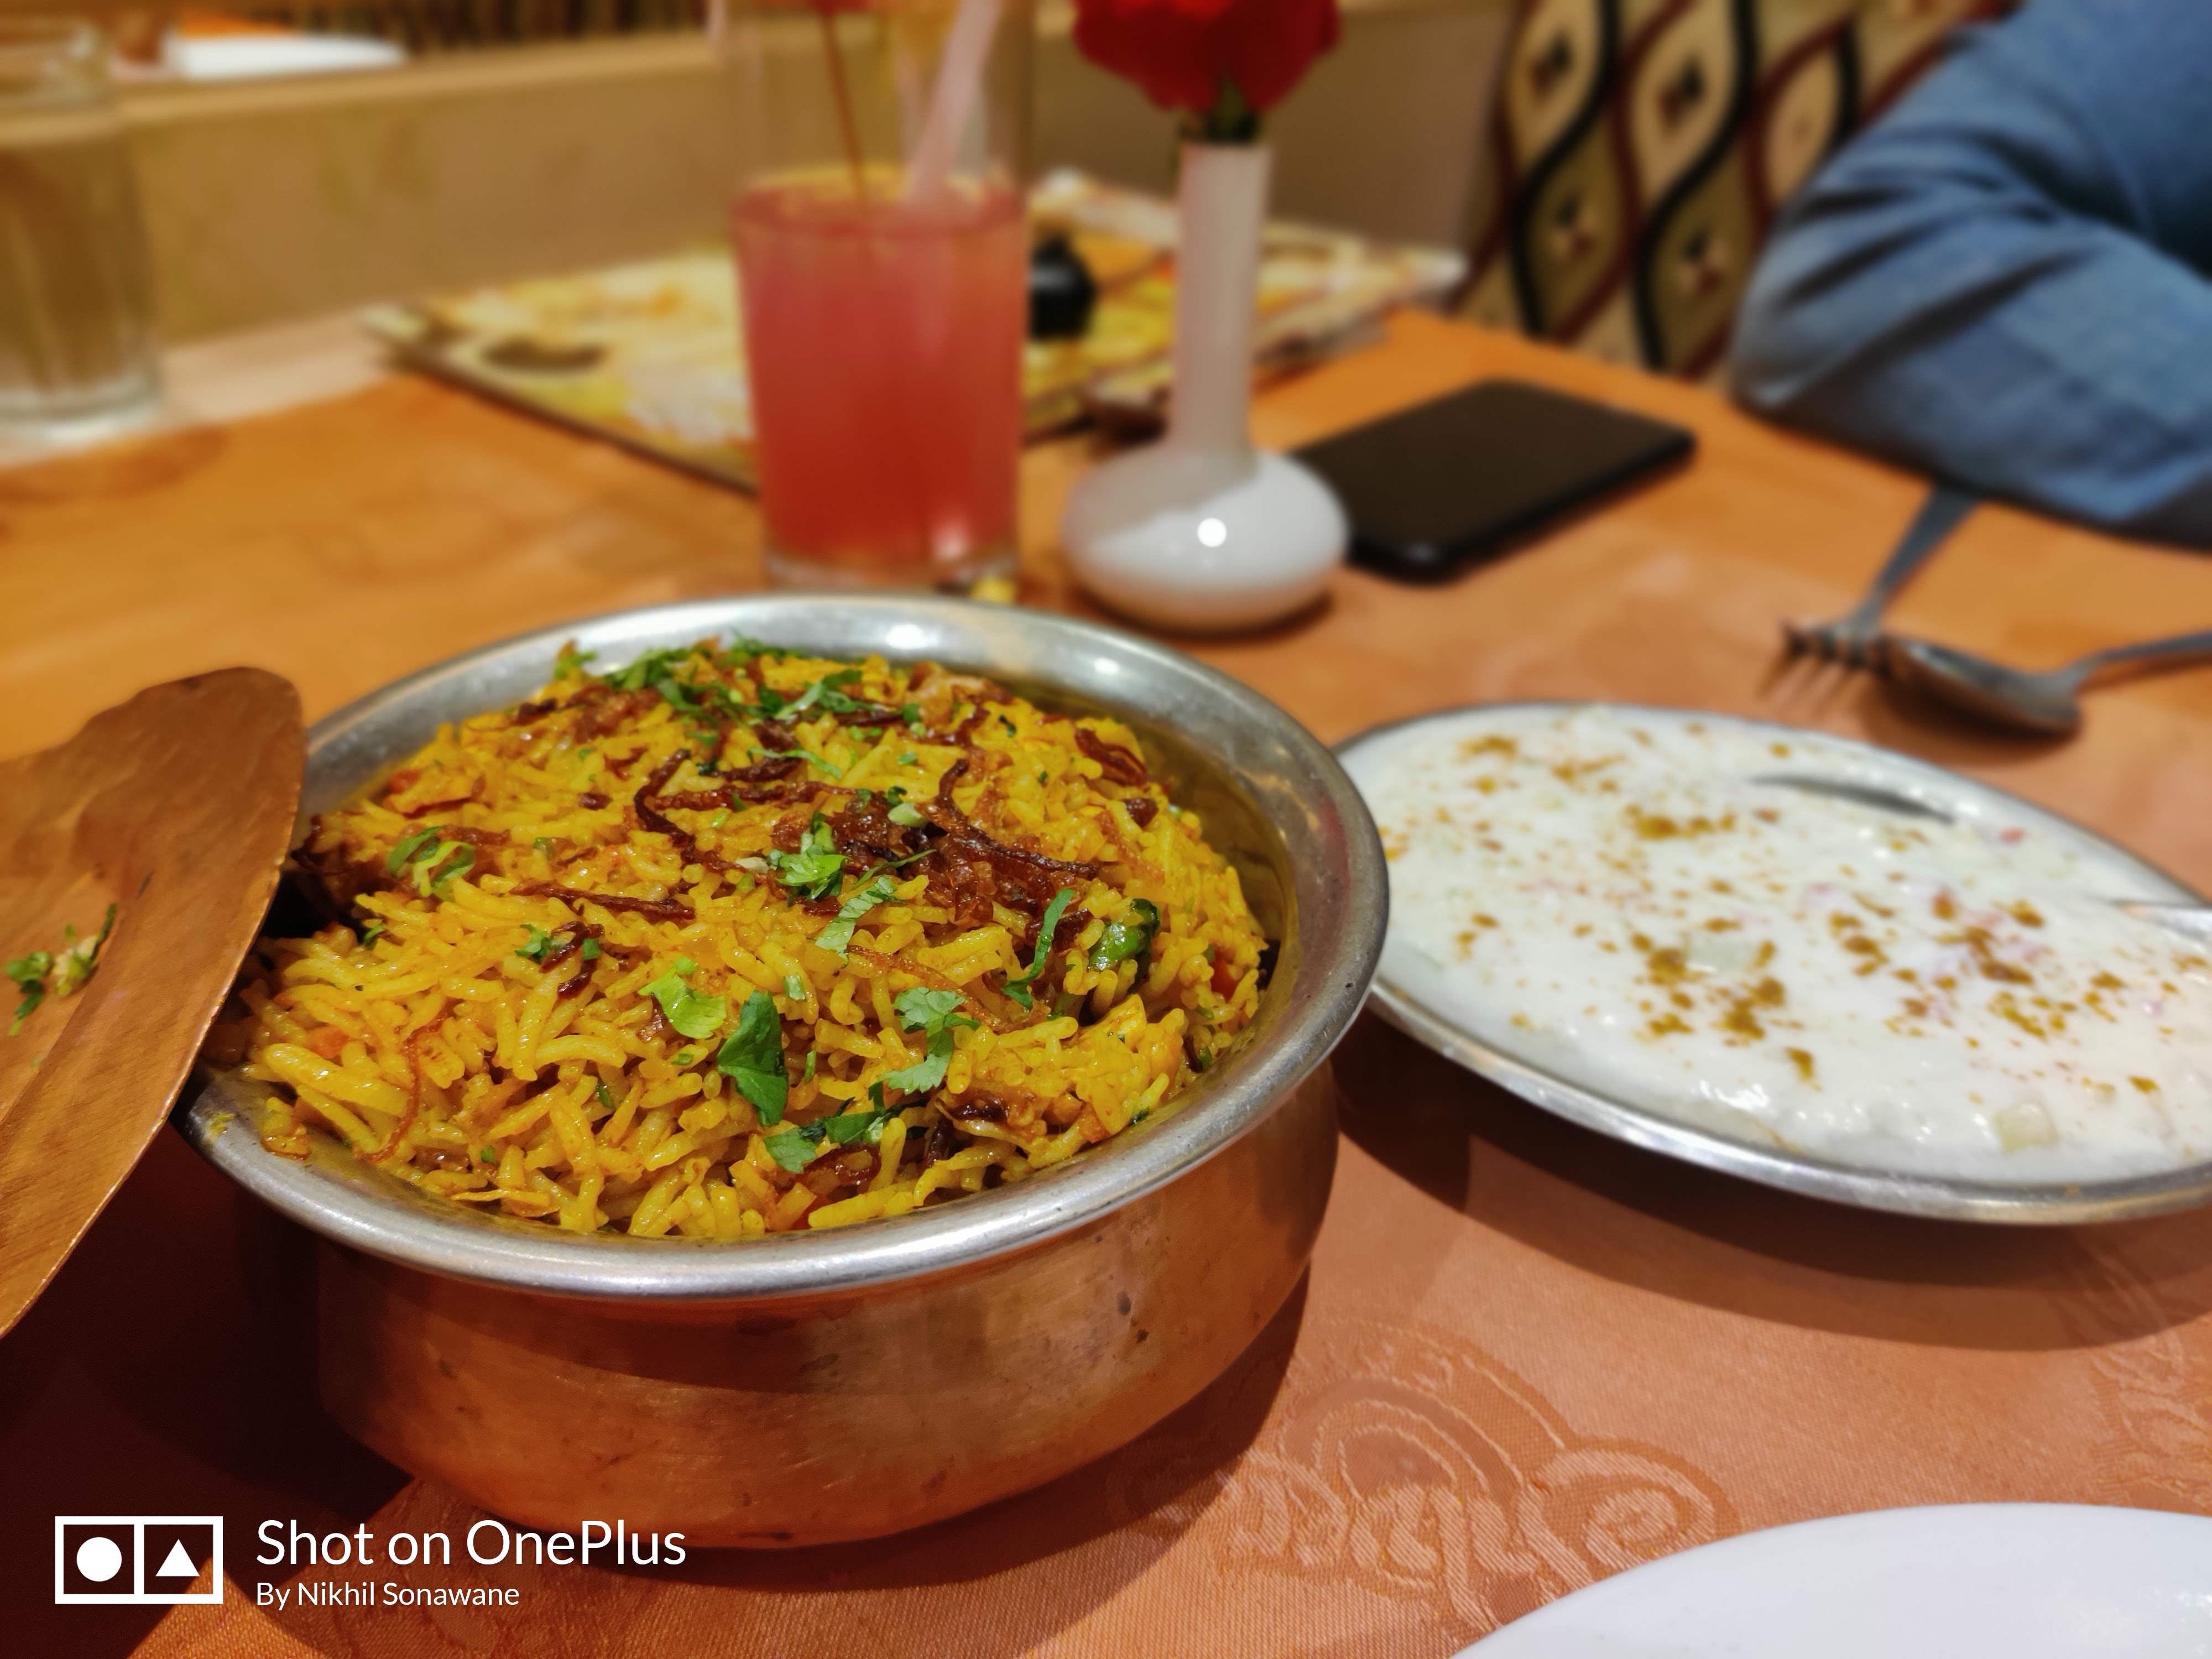 Dish,Food,Cuisine,Ingredient,Biryani,Meal,Curry,Indian cuisine,Recipe,Produce